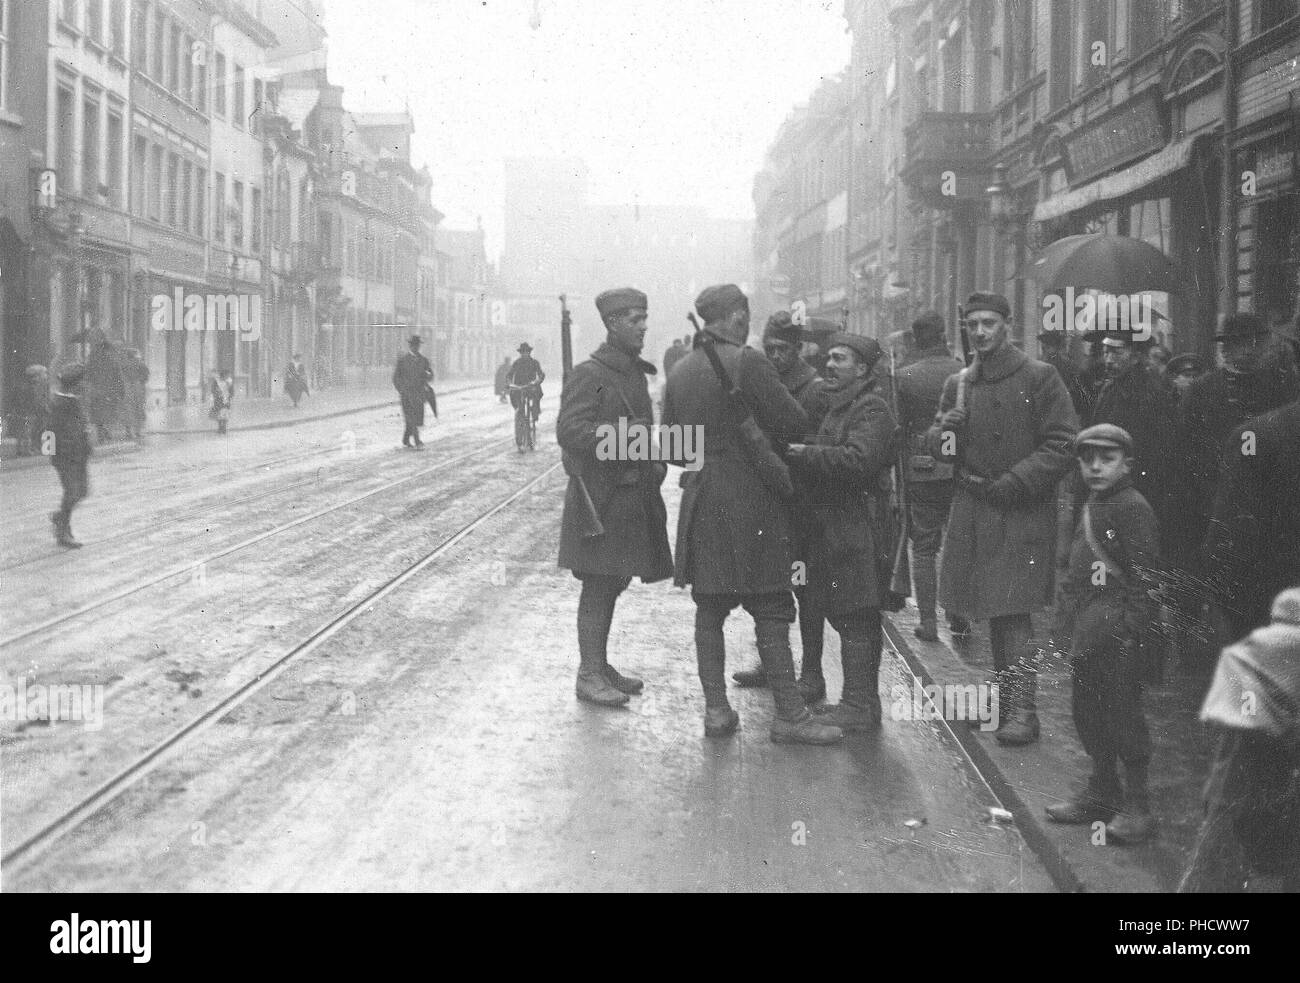 1919 - der Besatzungsarmee - amerikanische Soldaten in Trier, Deutschland Stockfoto